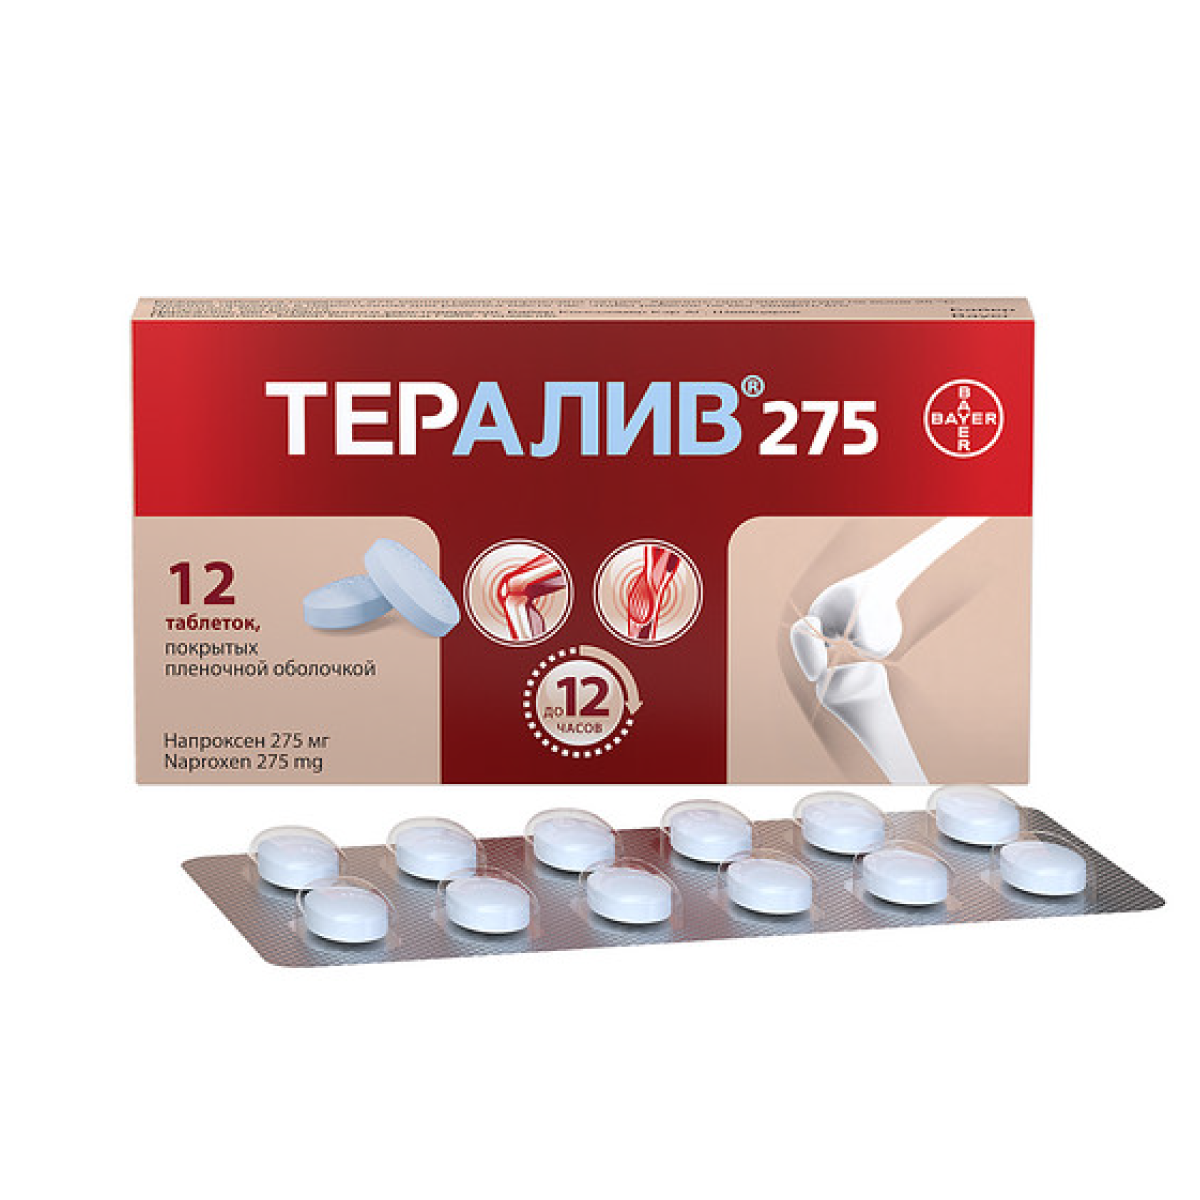 Тералив, таблетки в плёночной оболочке 275 мг, 12 шт.